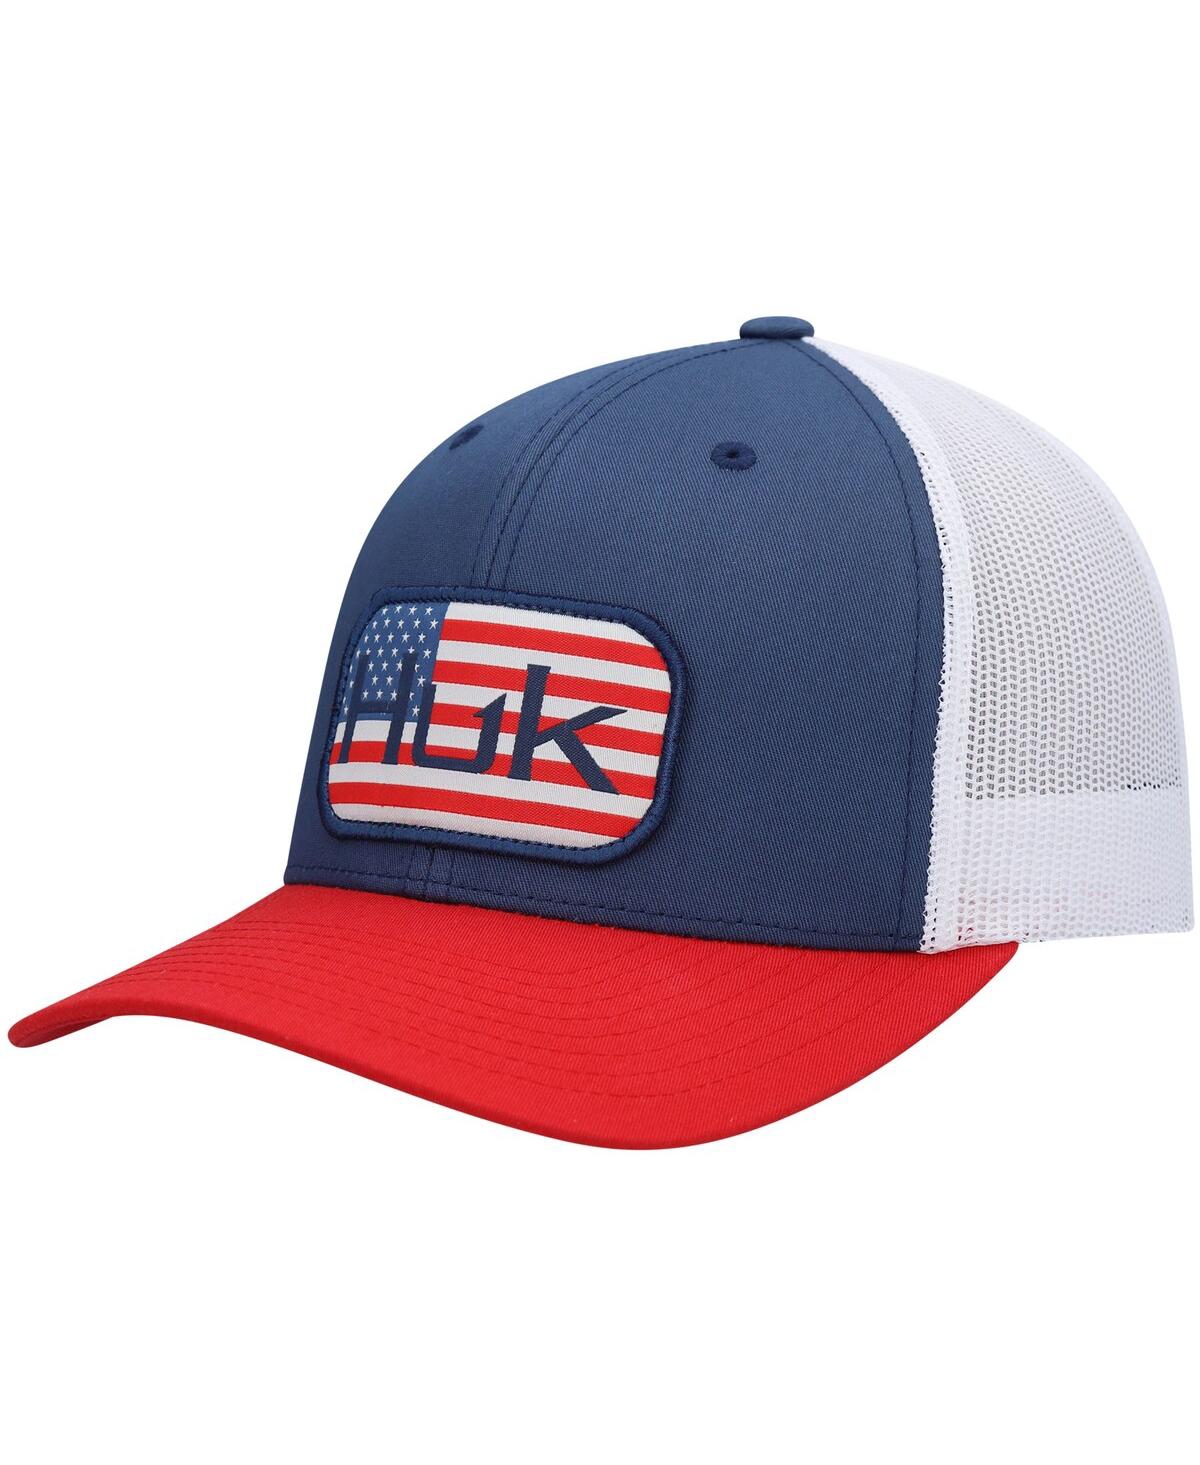 Shop Huk Men's  Blue Americana Color Block Trucker Snapback Hat